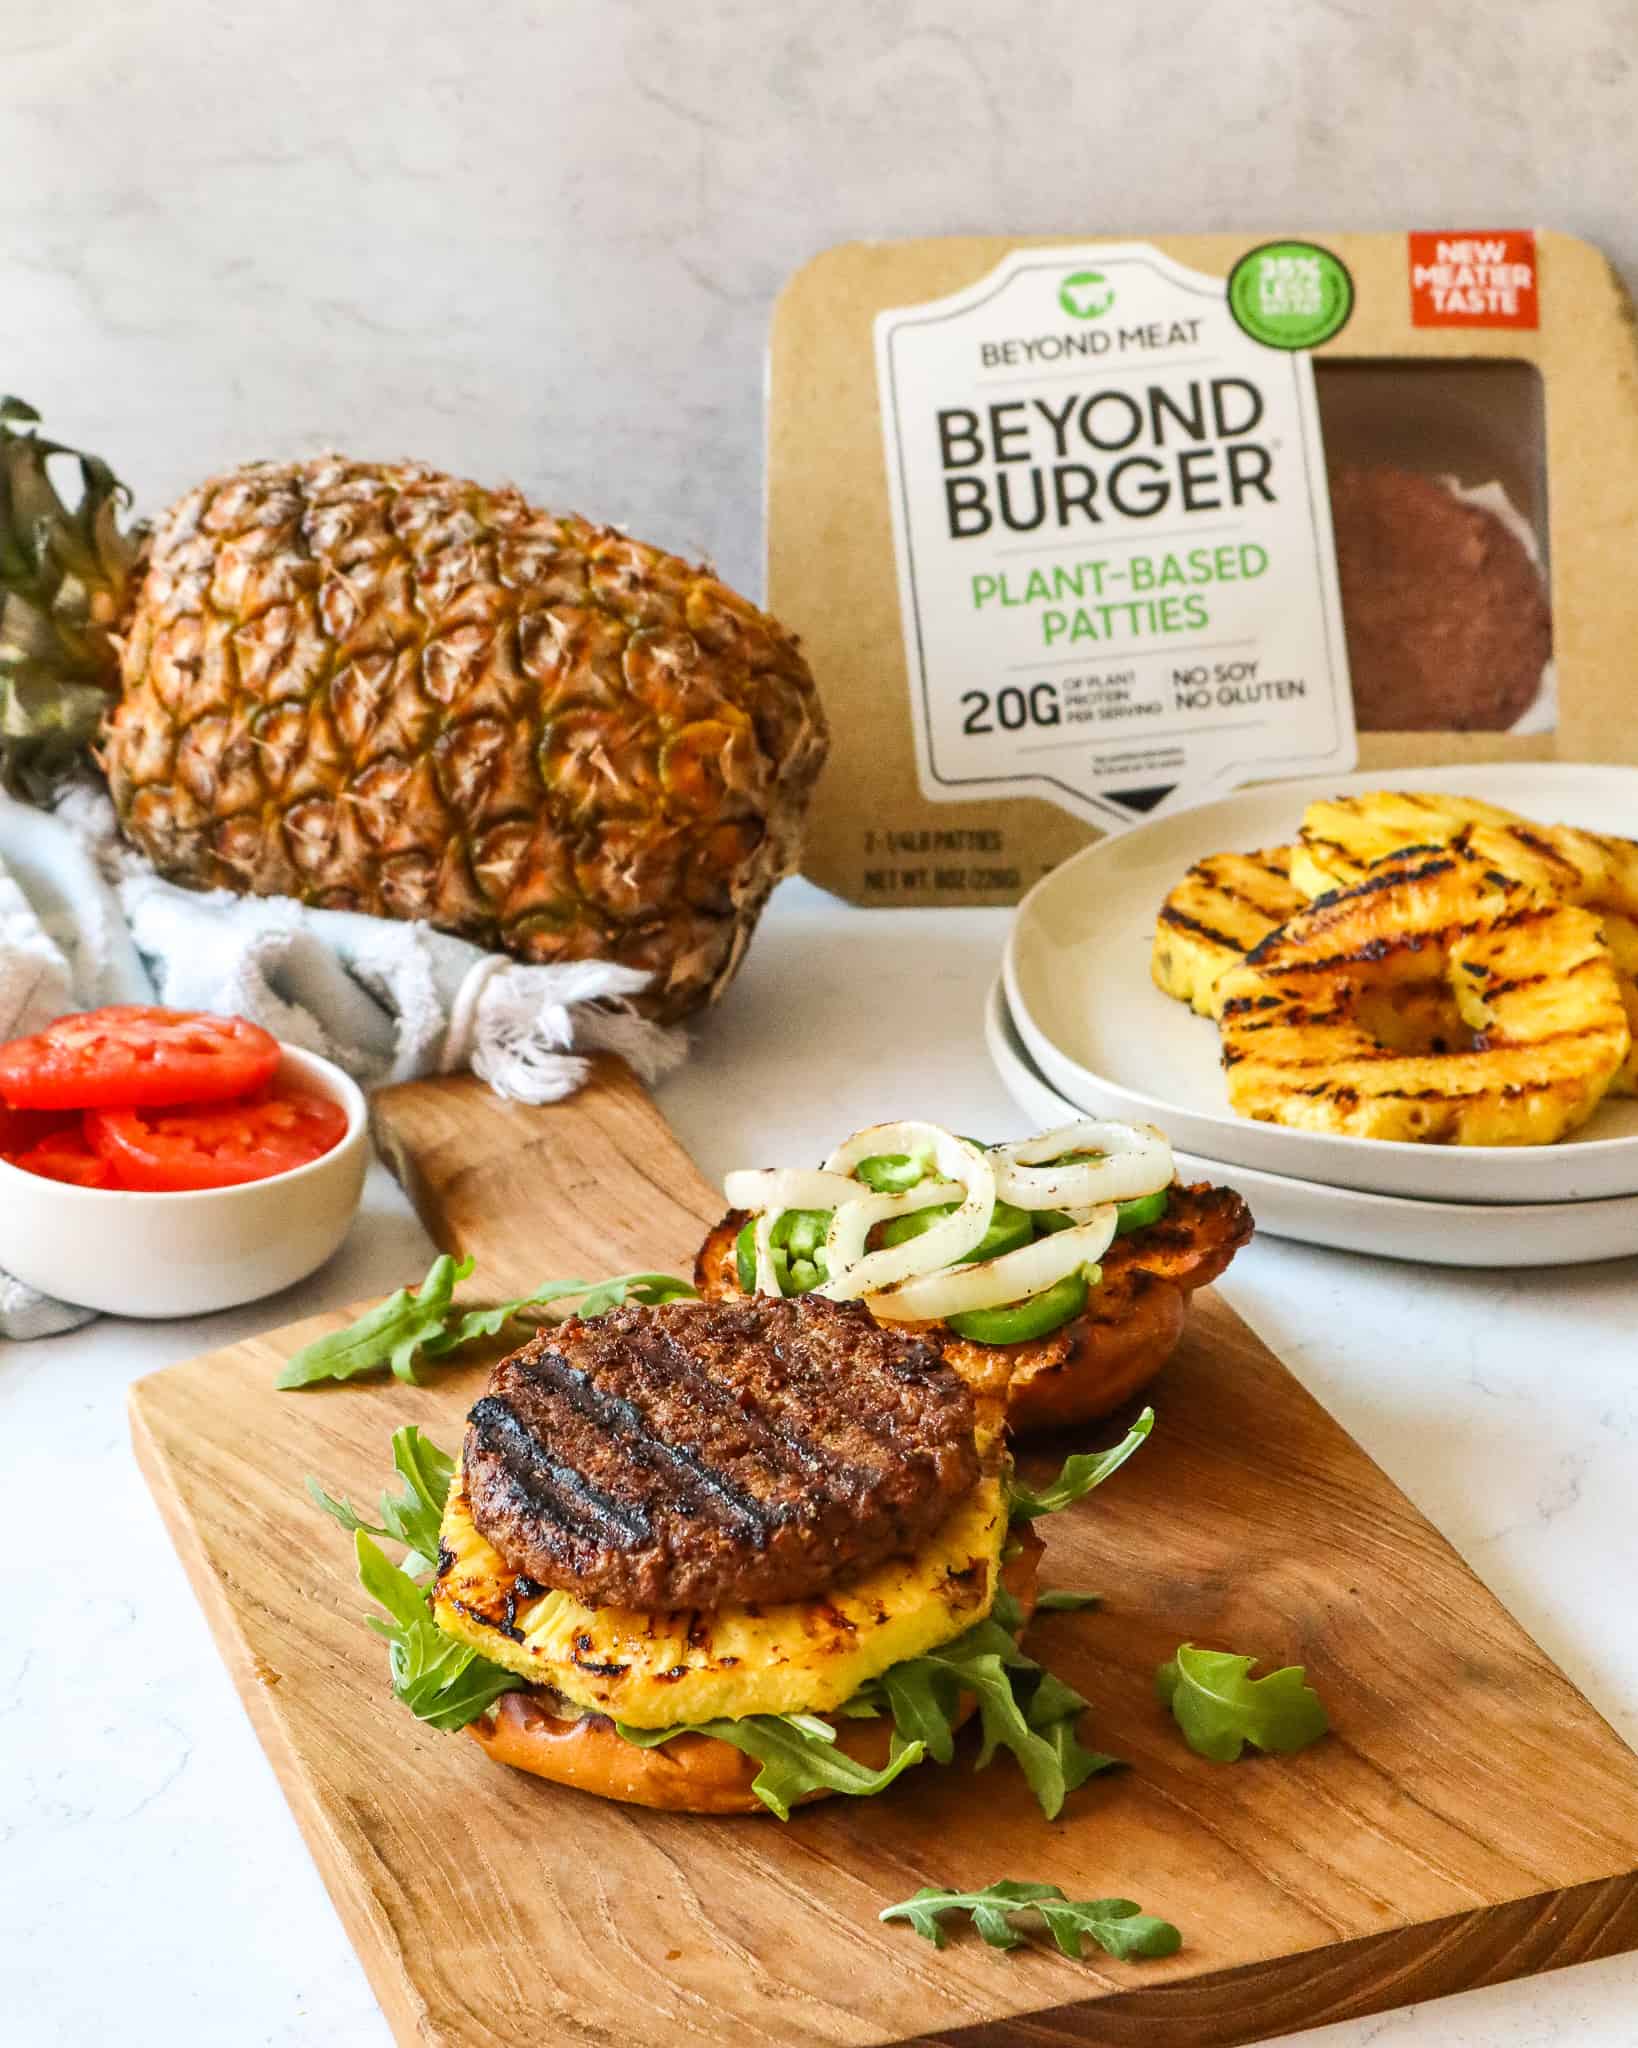 BBQ Beyond Burger, Vegan Recipe